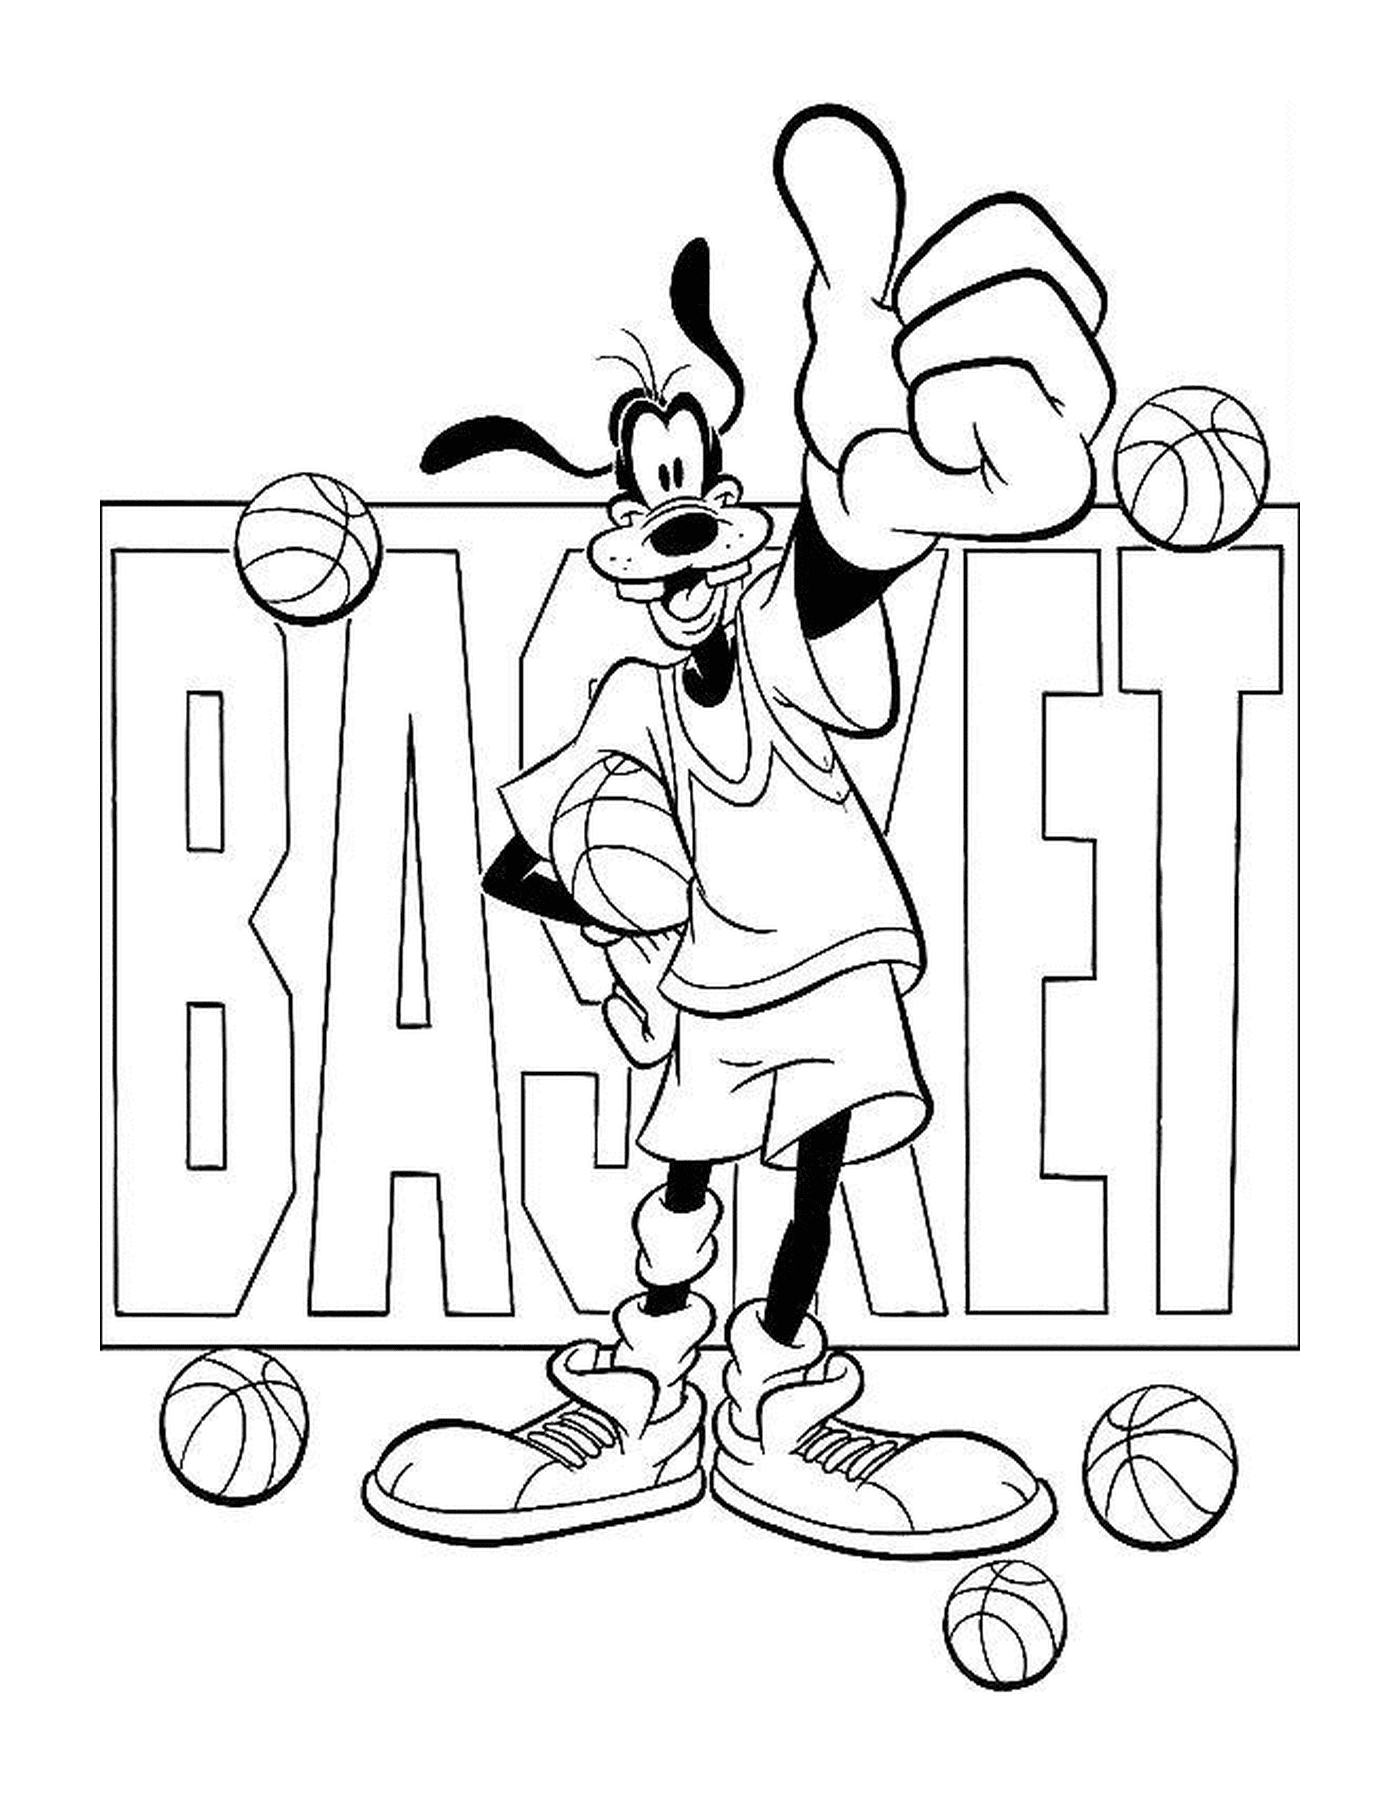  Динго любит баскетбол и держит мяч перед словом корзина 